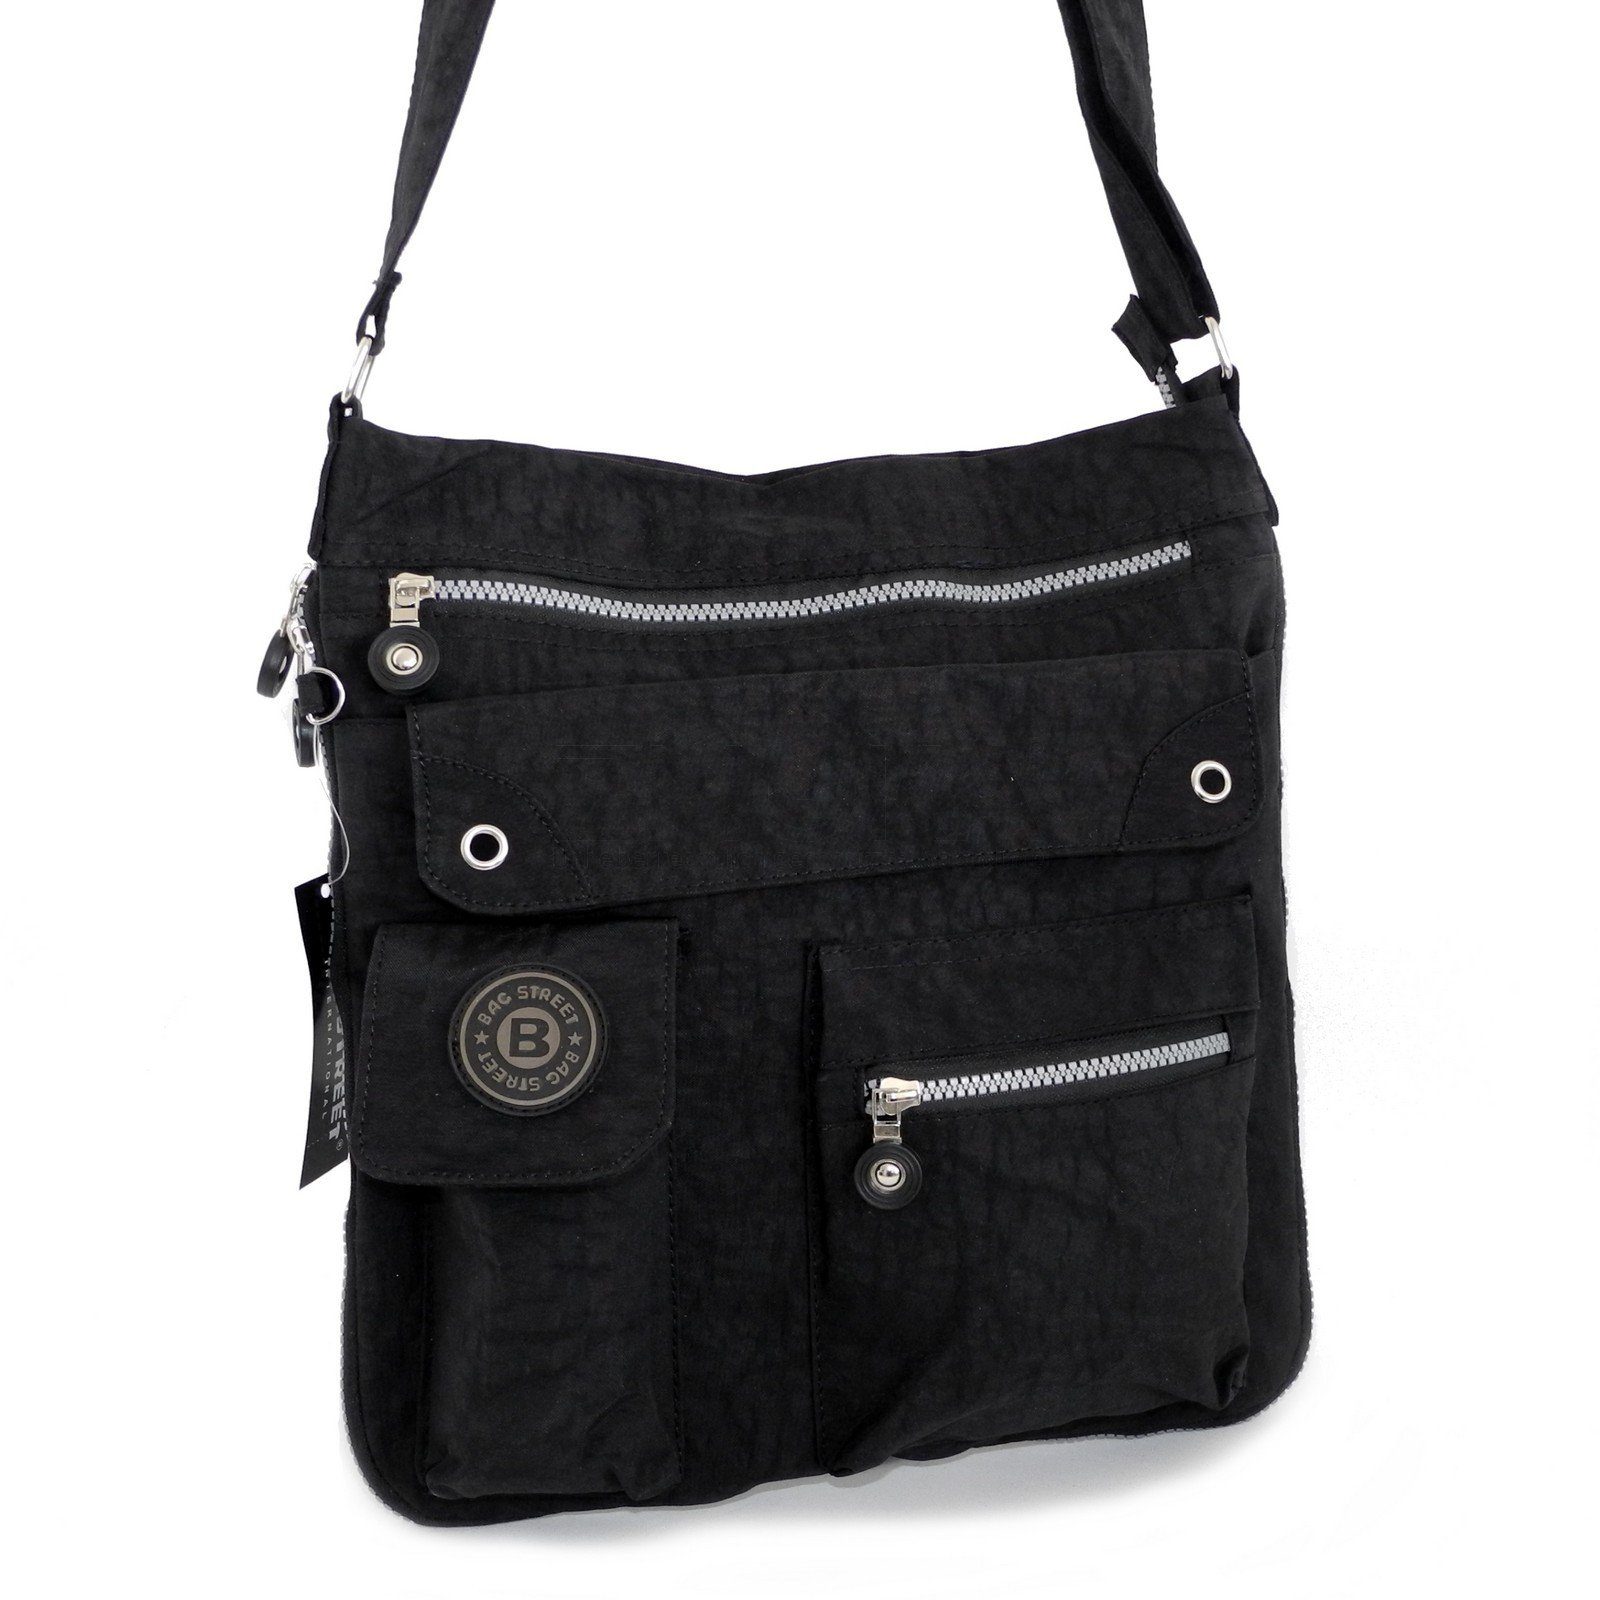 BAG STREET Umhängetasche Bag Street Messengerbag - Umhängetasche Herren Damen Auswa Schwarz Stofftasche